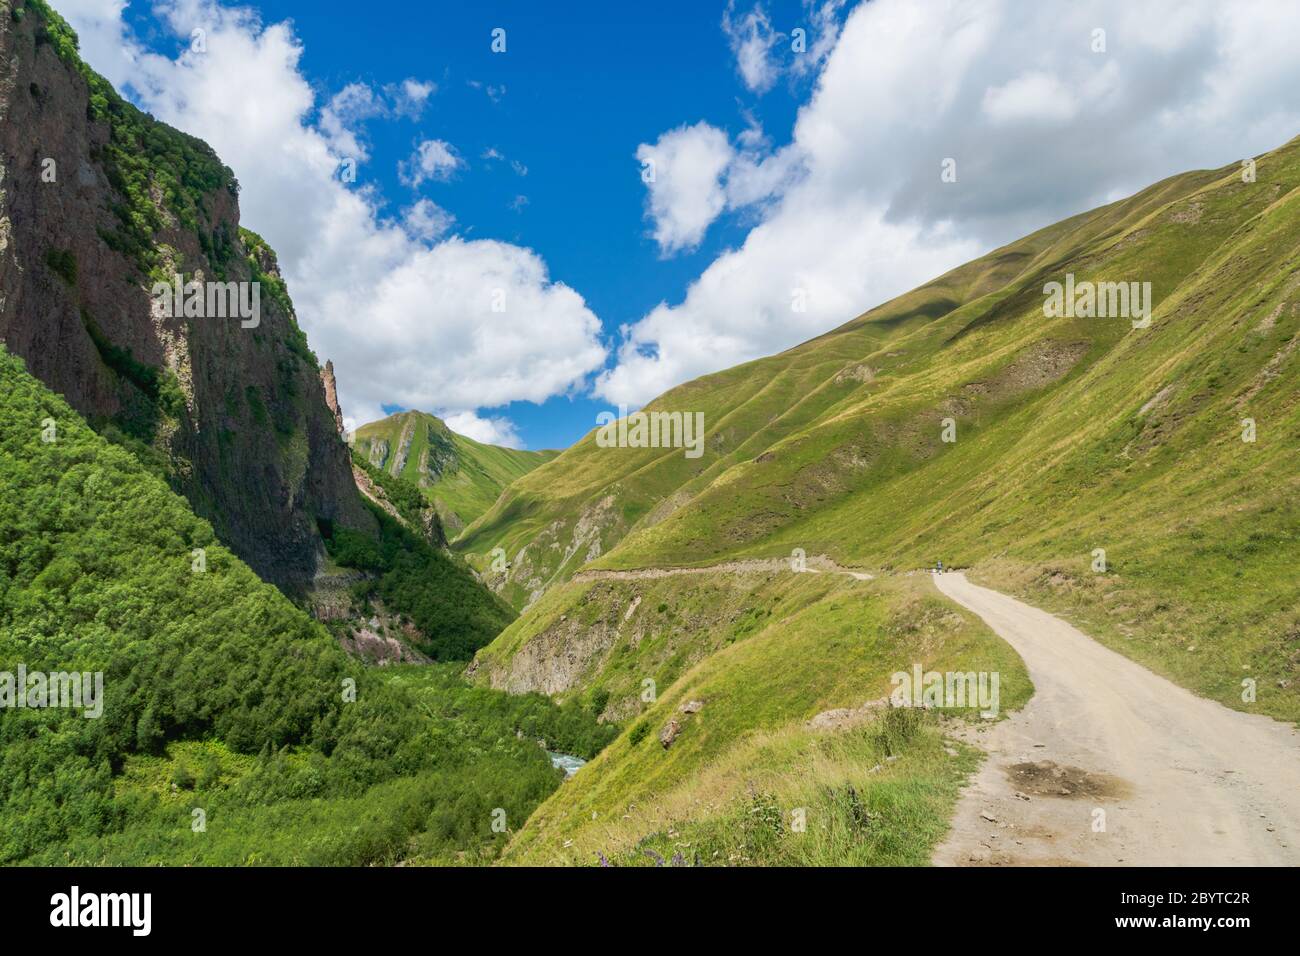 Vallée de Truso et gorge trekking / randonnée paysage, à Kazbegi, Géorgie. La vallée de Truso est une route pittoresque de trekking Banque D'Images